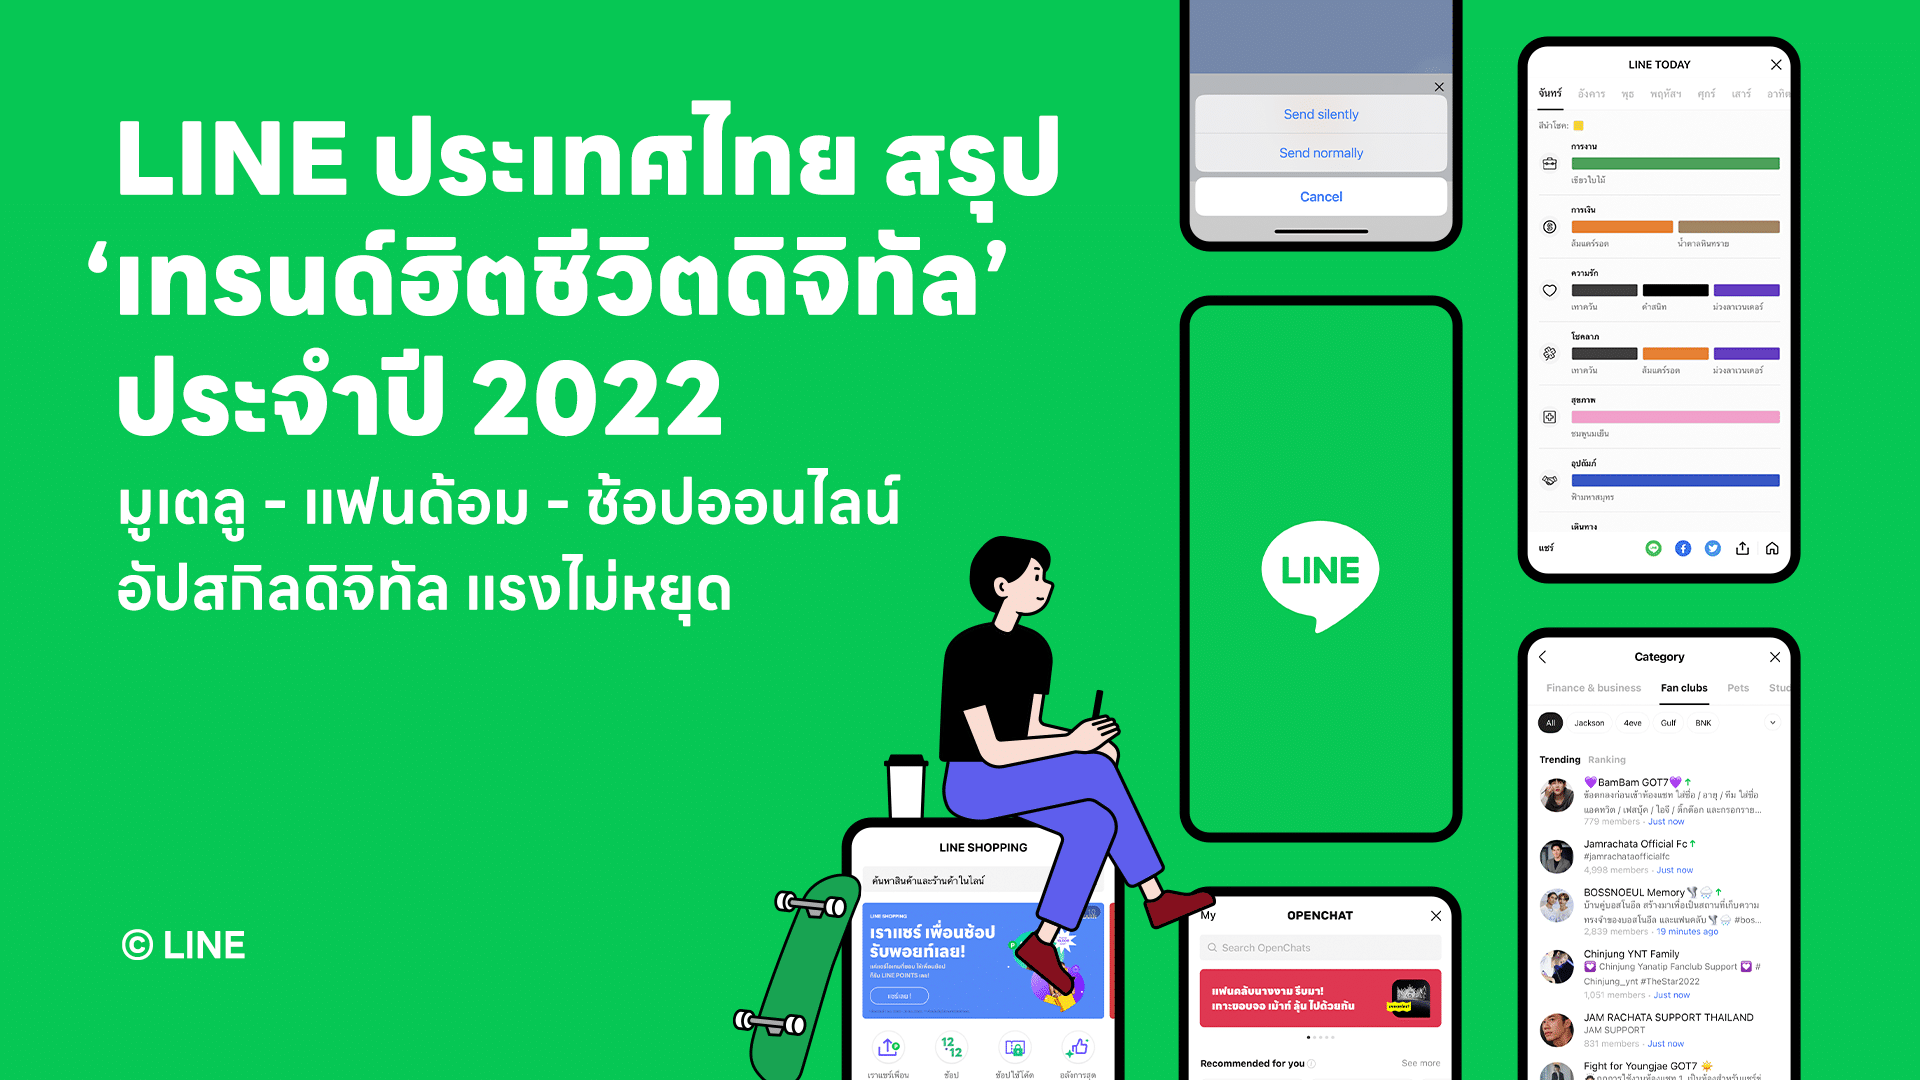 LINE ประเทศไทย สรุป “เทรนด์ฮิตชีวิตดิจิทัล” ประจำปี 2022